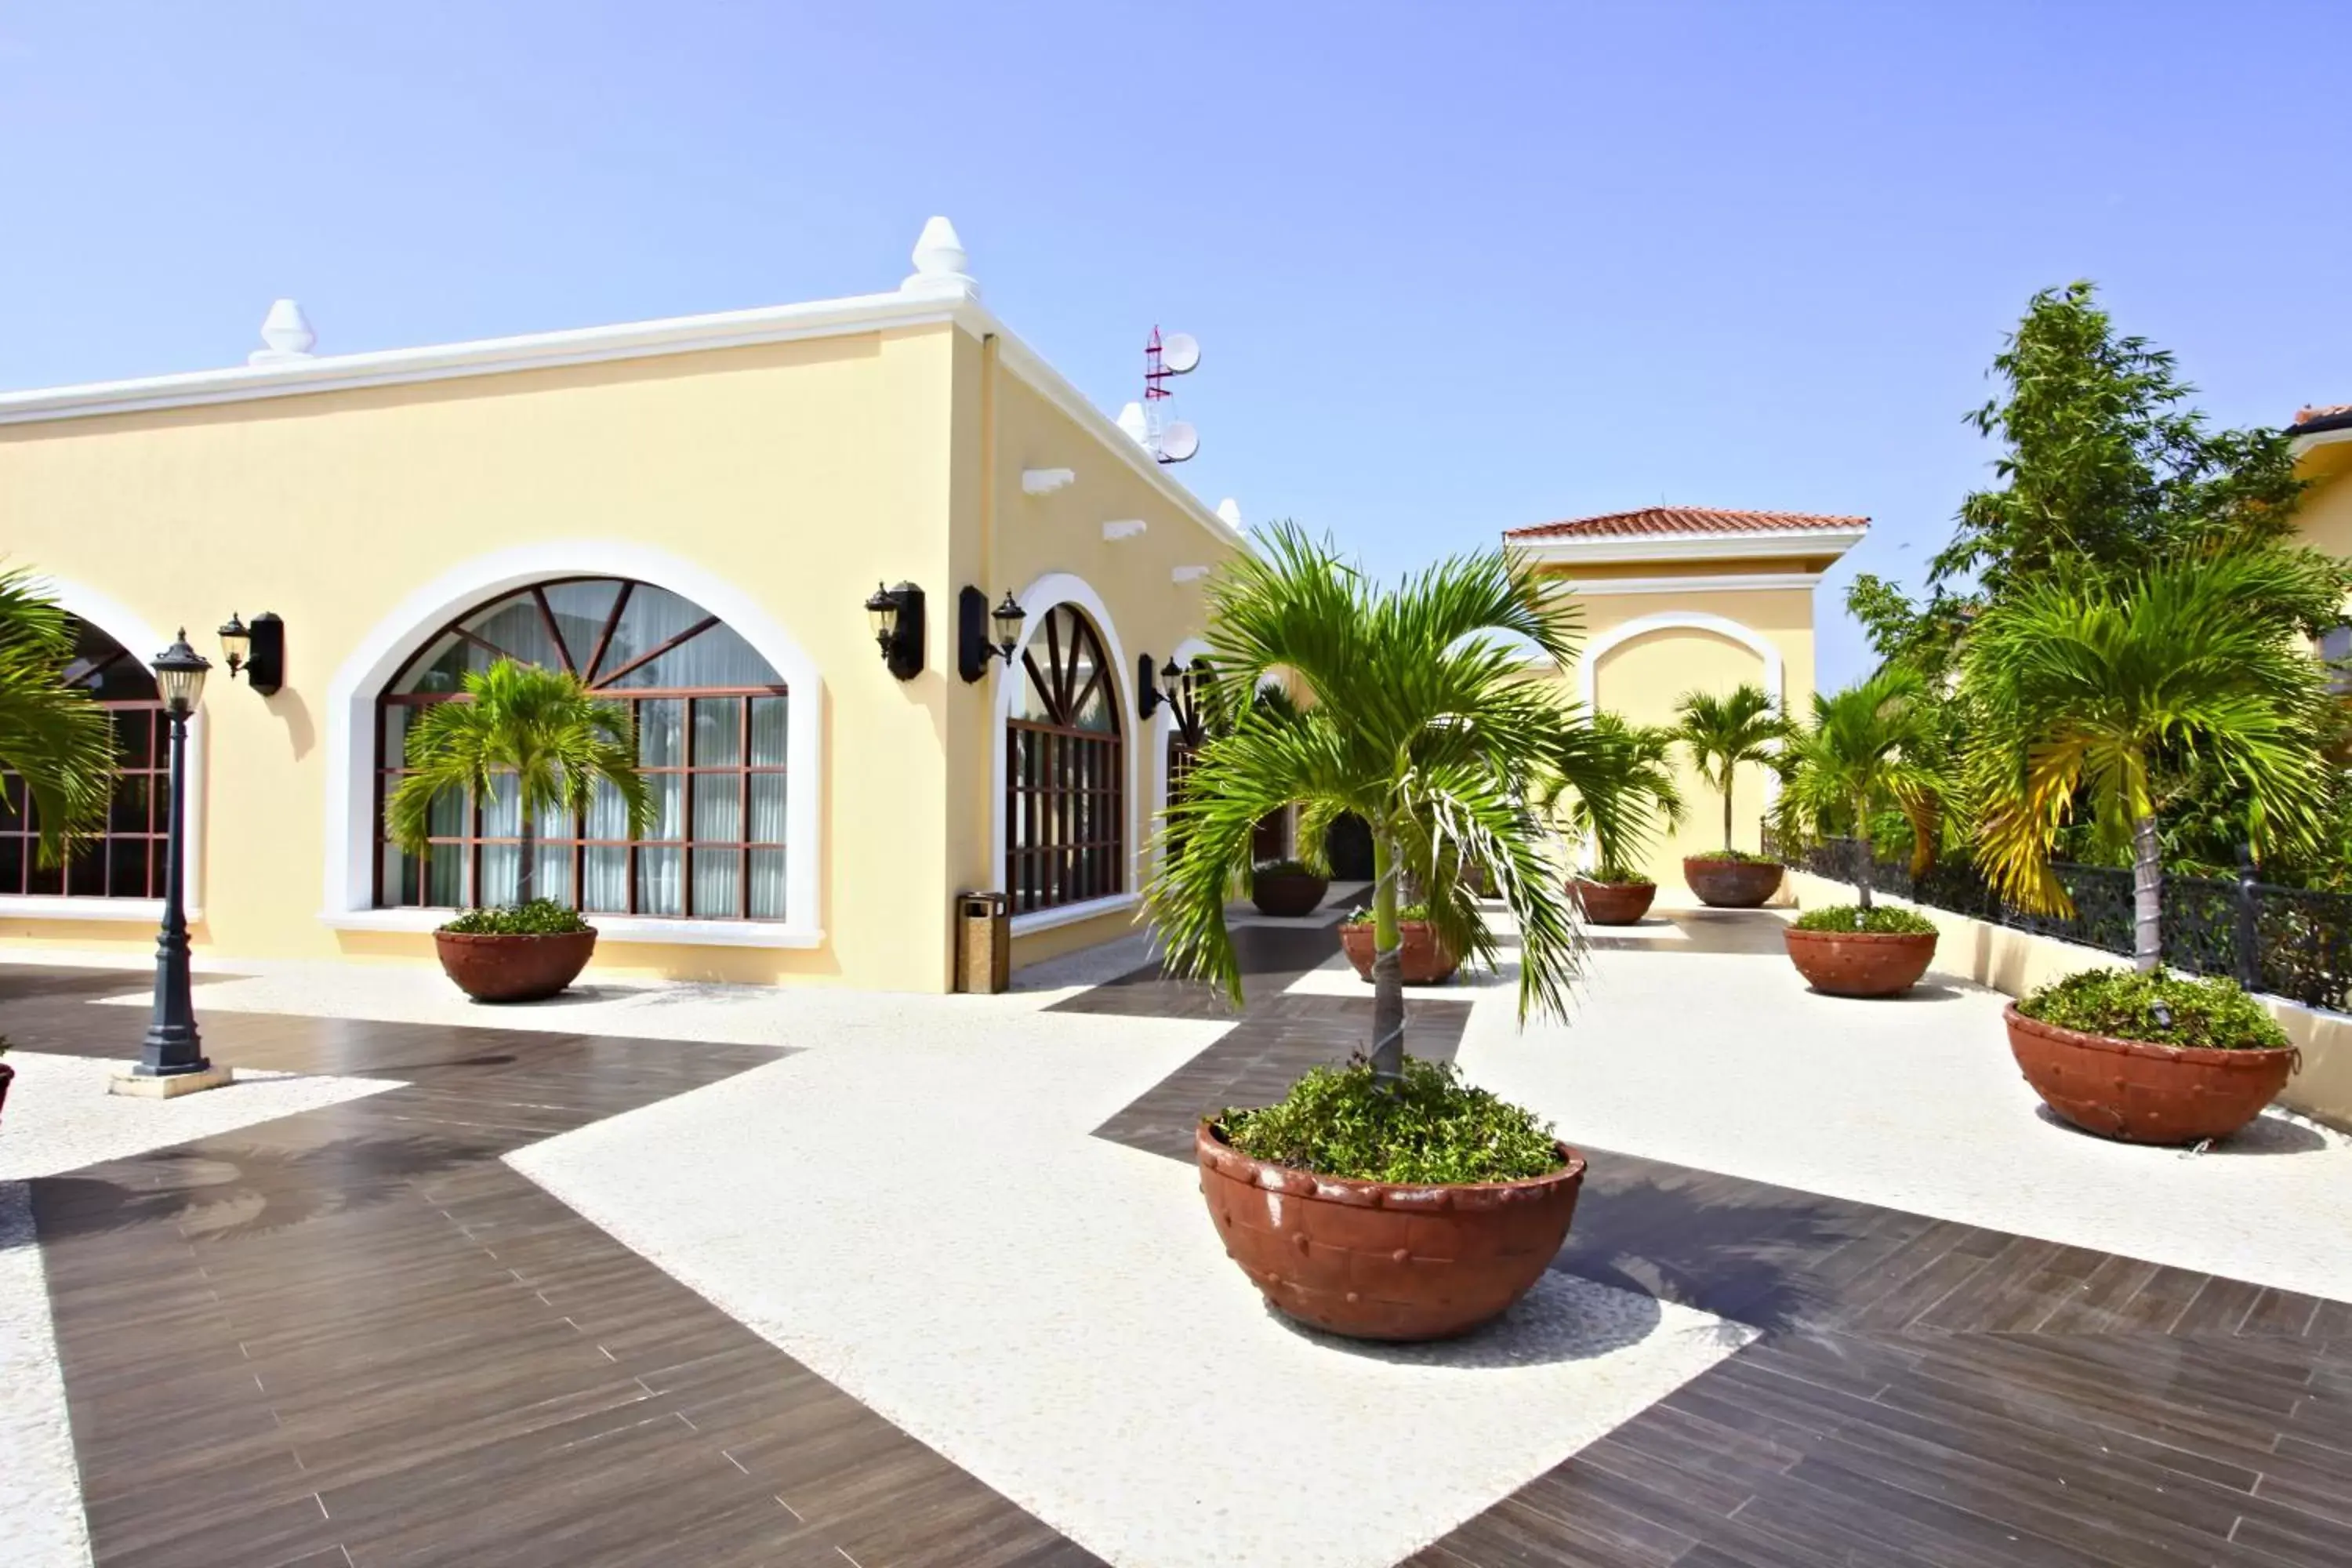 Property building, Patio/Outdoor Area in Sandos Playacar All Inclusive